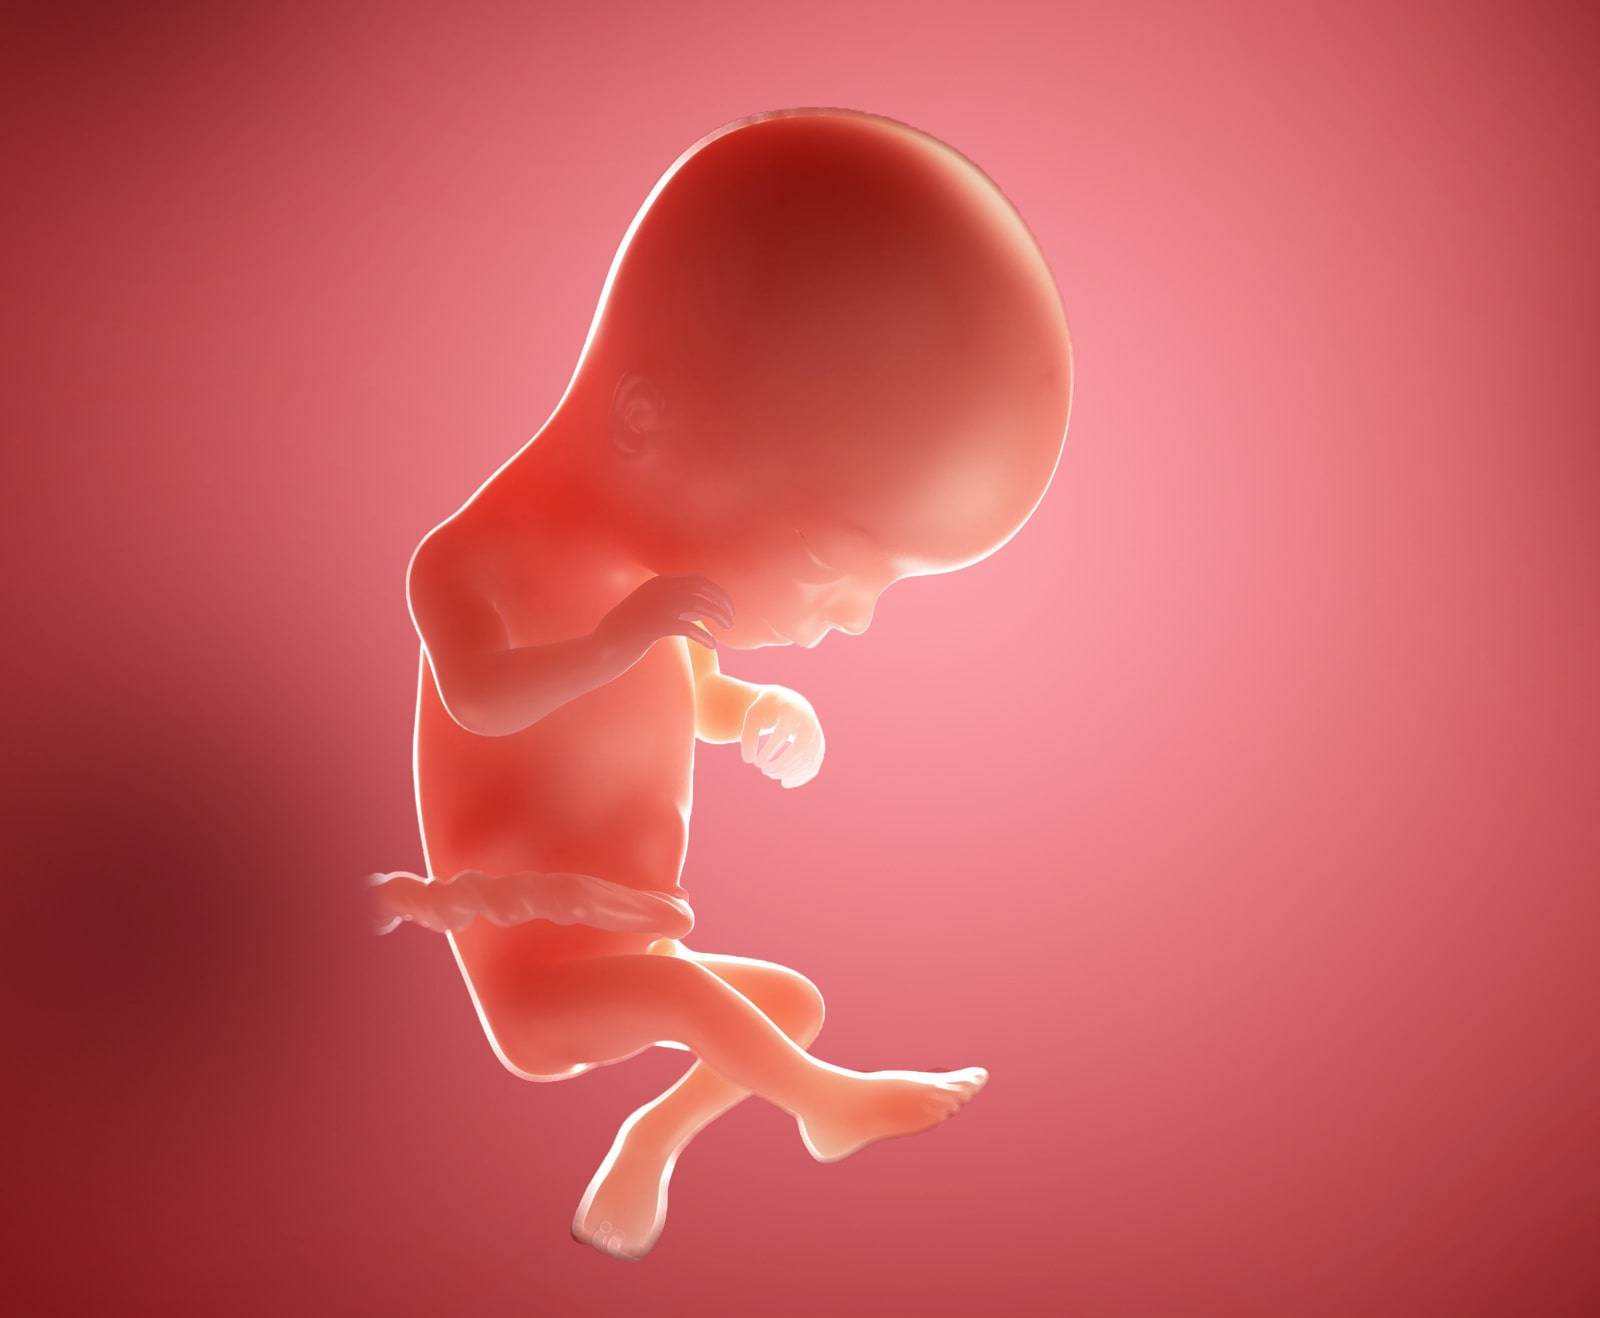 16 неделя беременности: развитие плода и ощущения женщины